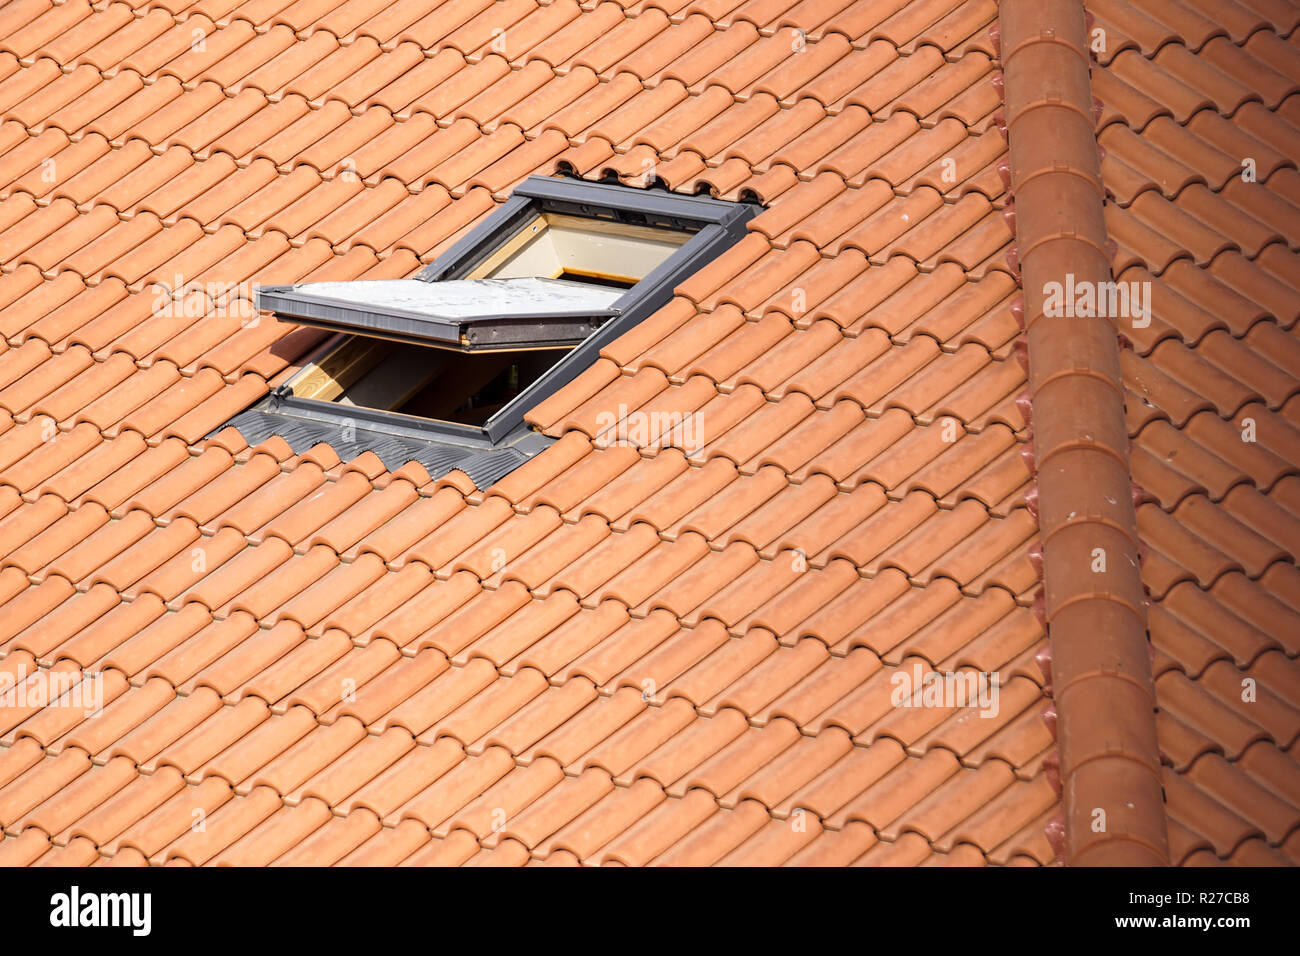 Roof with vasistas or velux windows Stock Photo